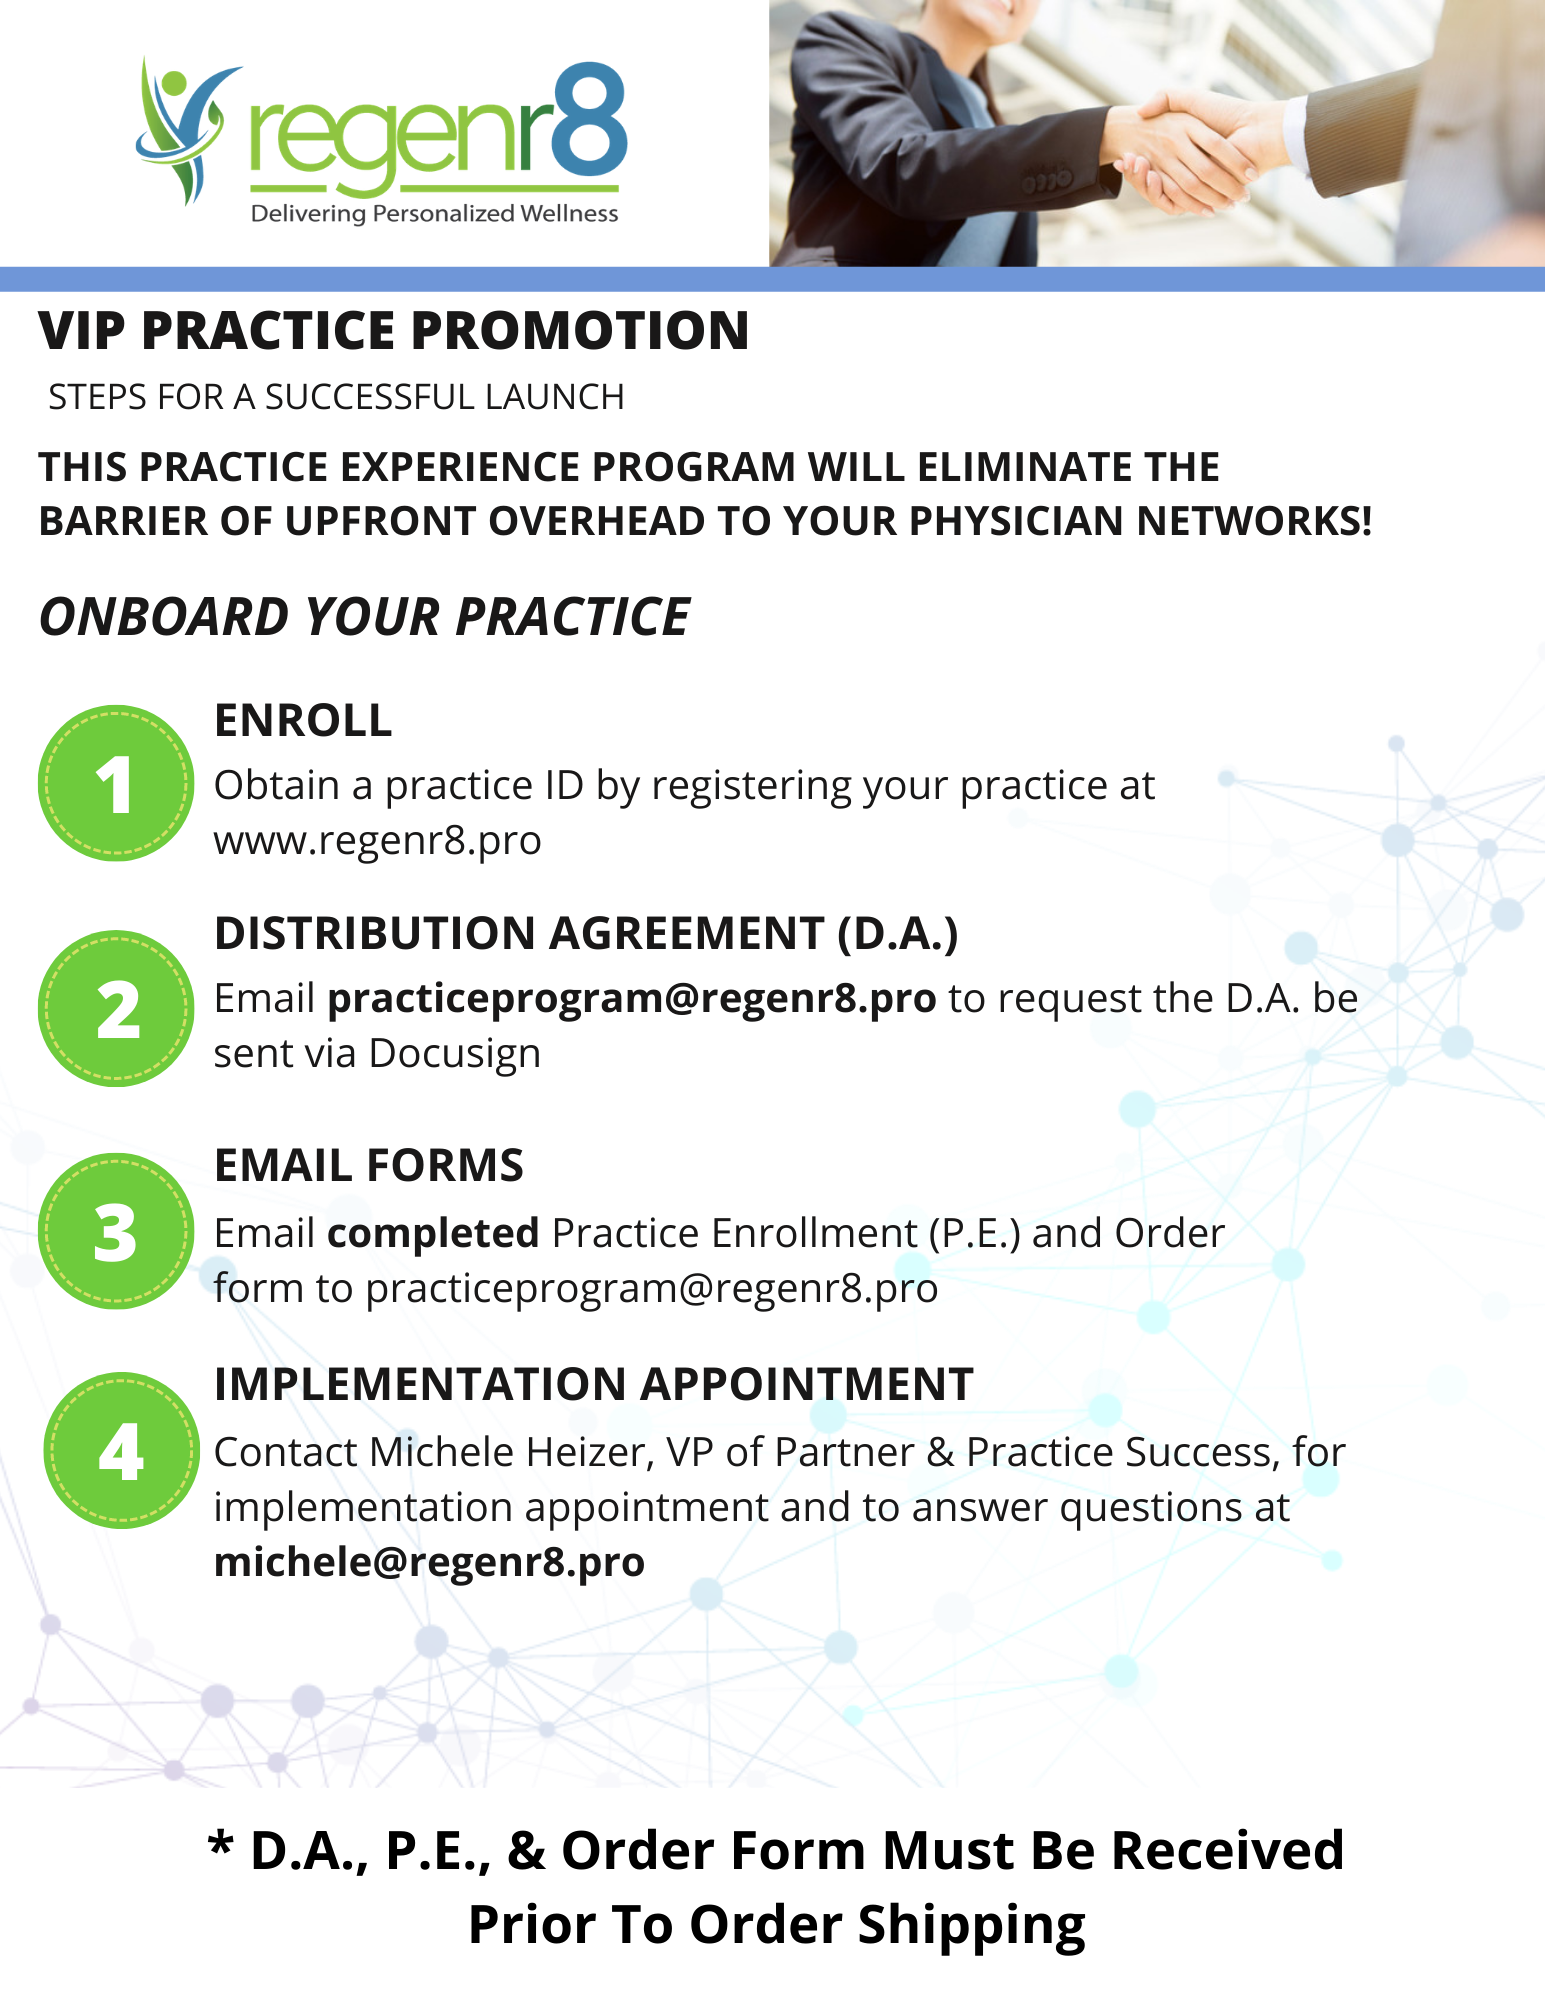 VIP Practice Promo Guide - 1_22_20_MR